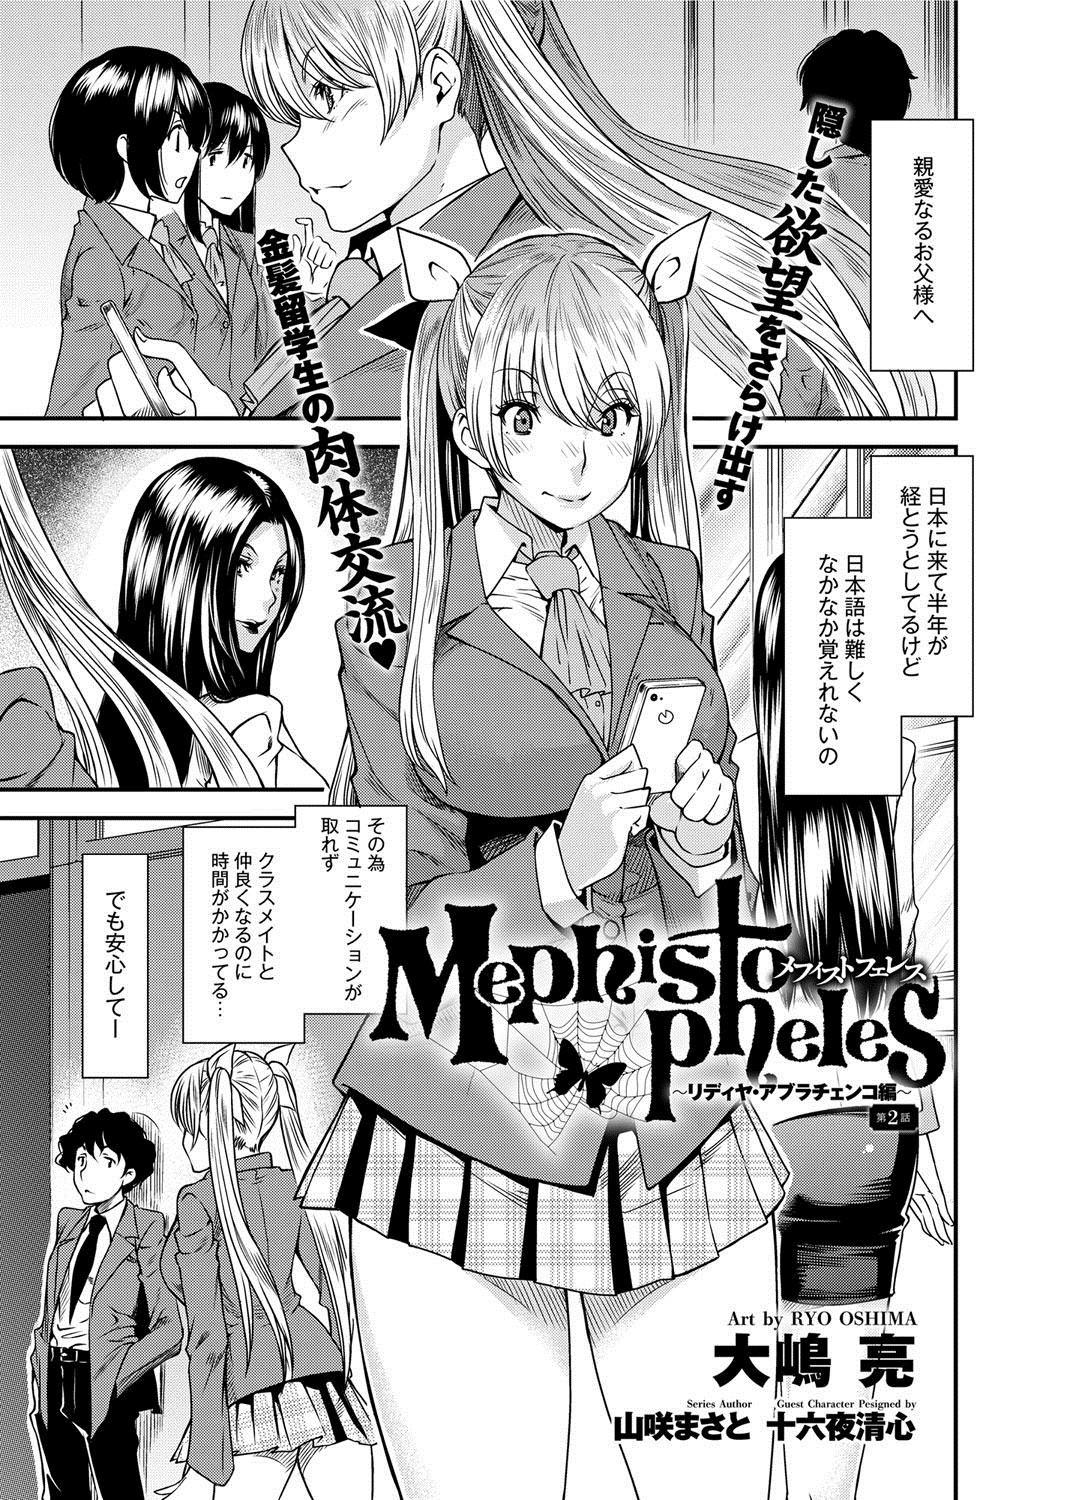 [Ryo Oshima] Mephisto Pheles Ch.01-02 page 9 full